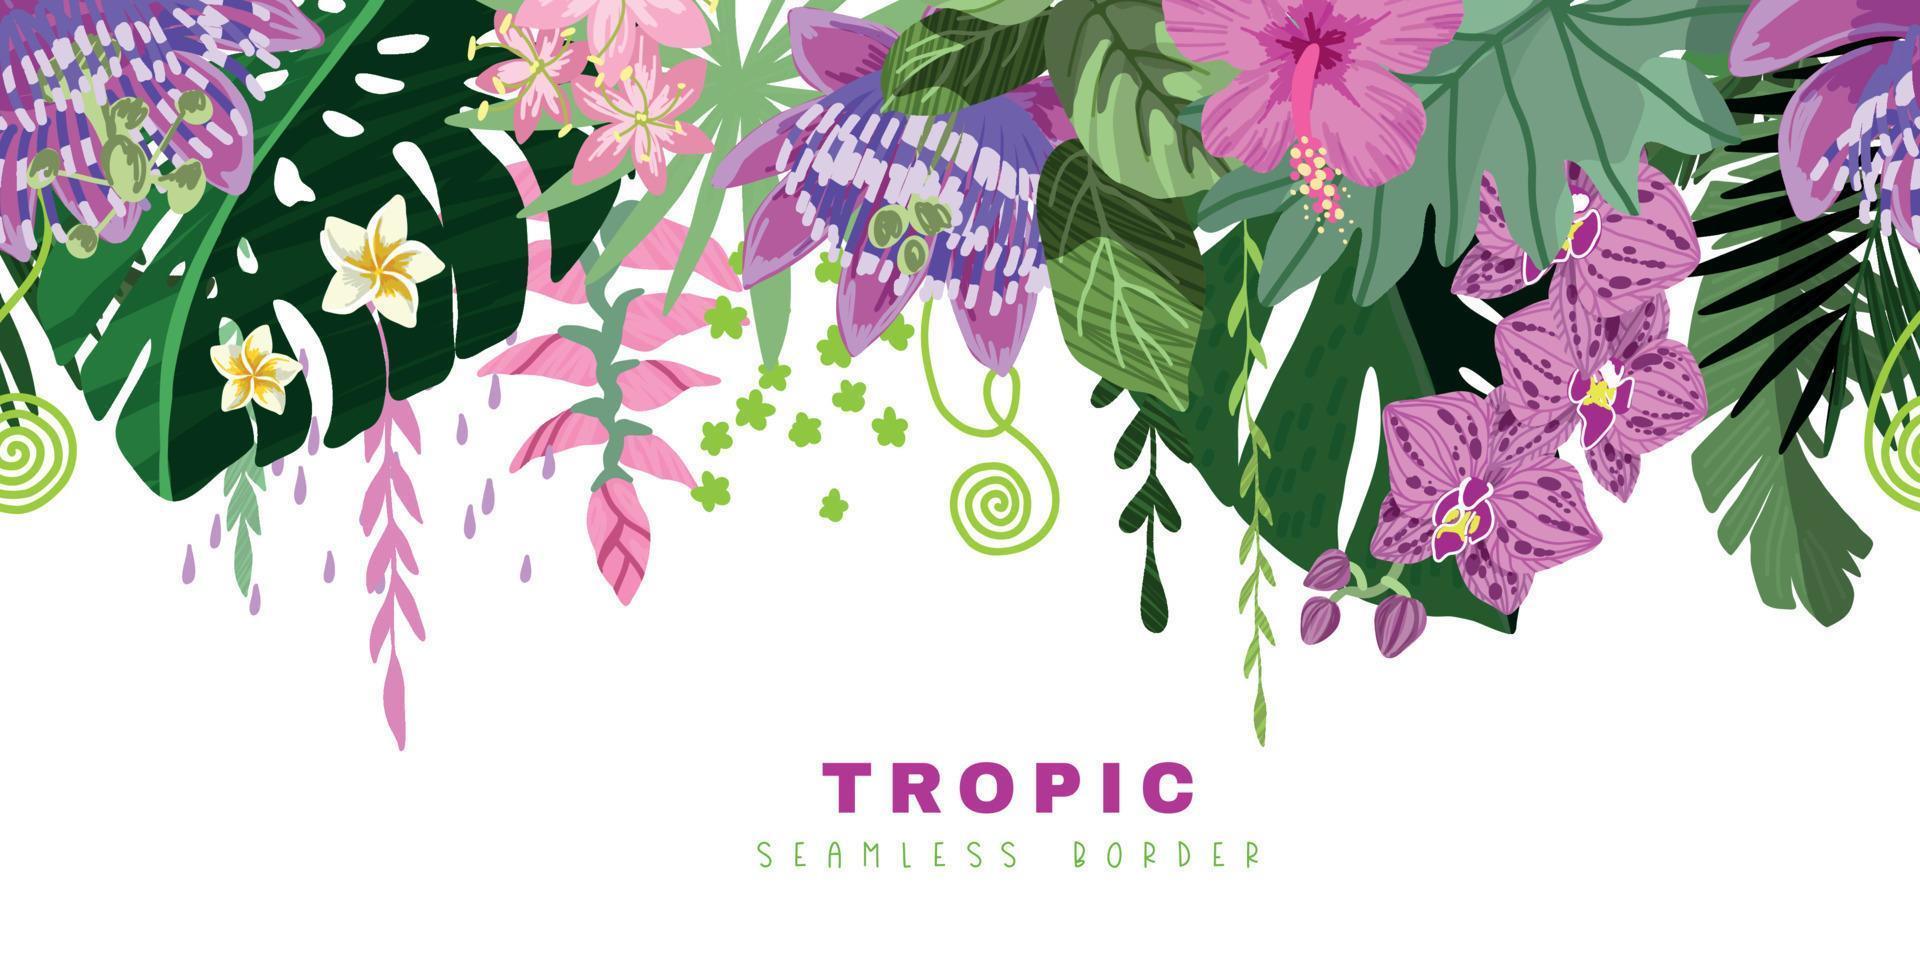 bordure tropicale transparente, feuilles de monstera vertes et fleurs tropicales roses vecteur